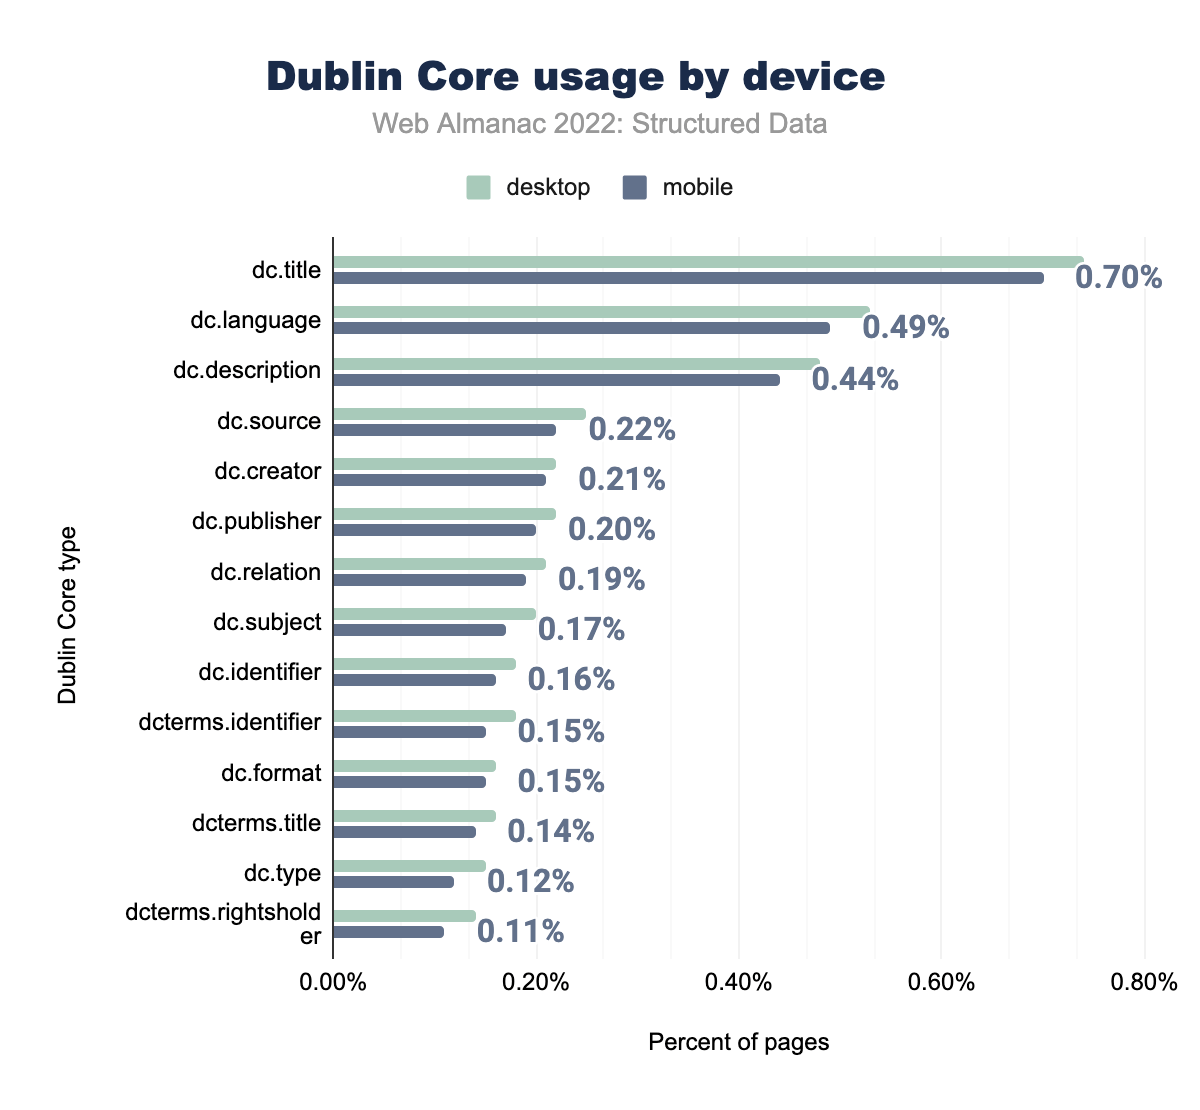 Utilizzo dei Dublin Core per dispositivo